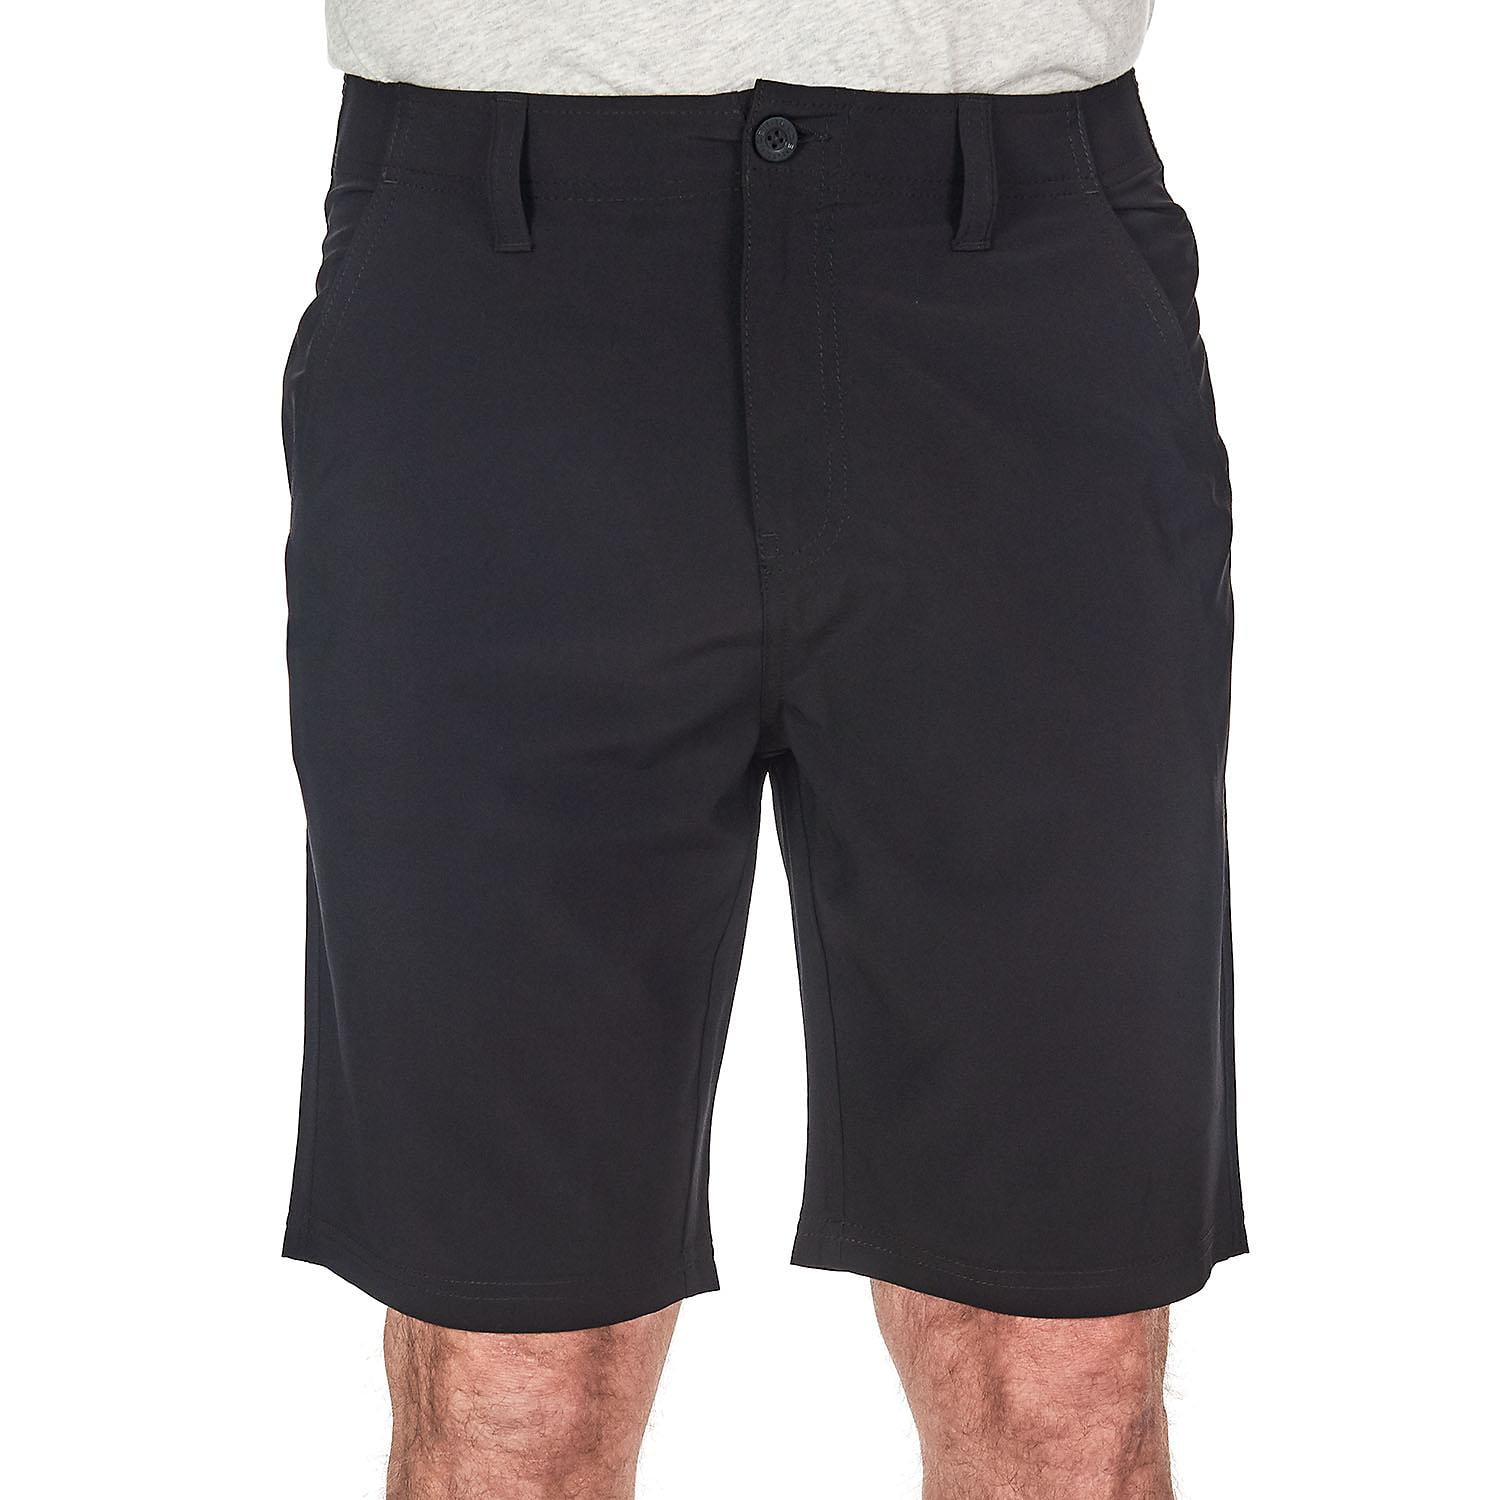 denali shorts